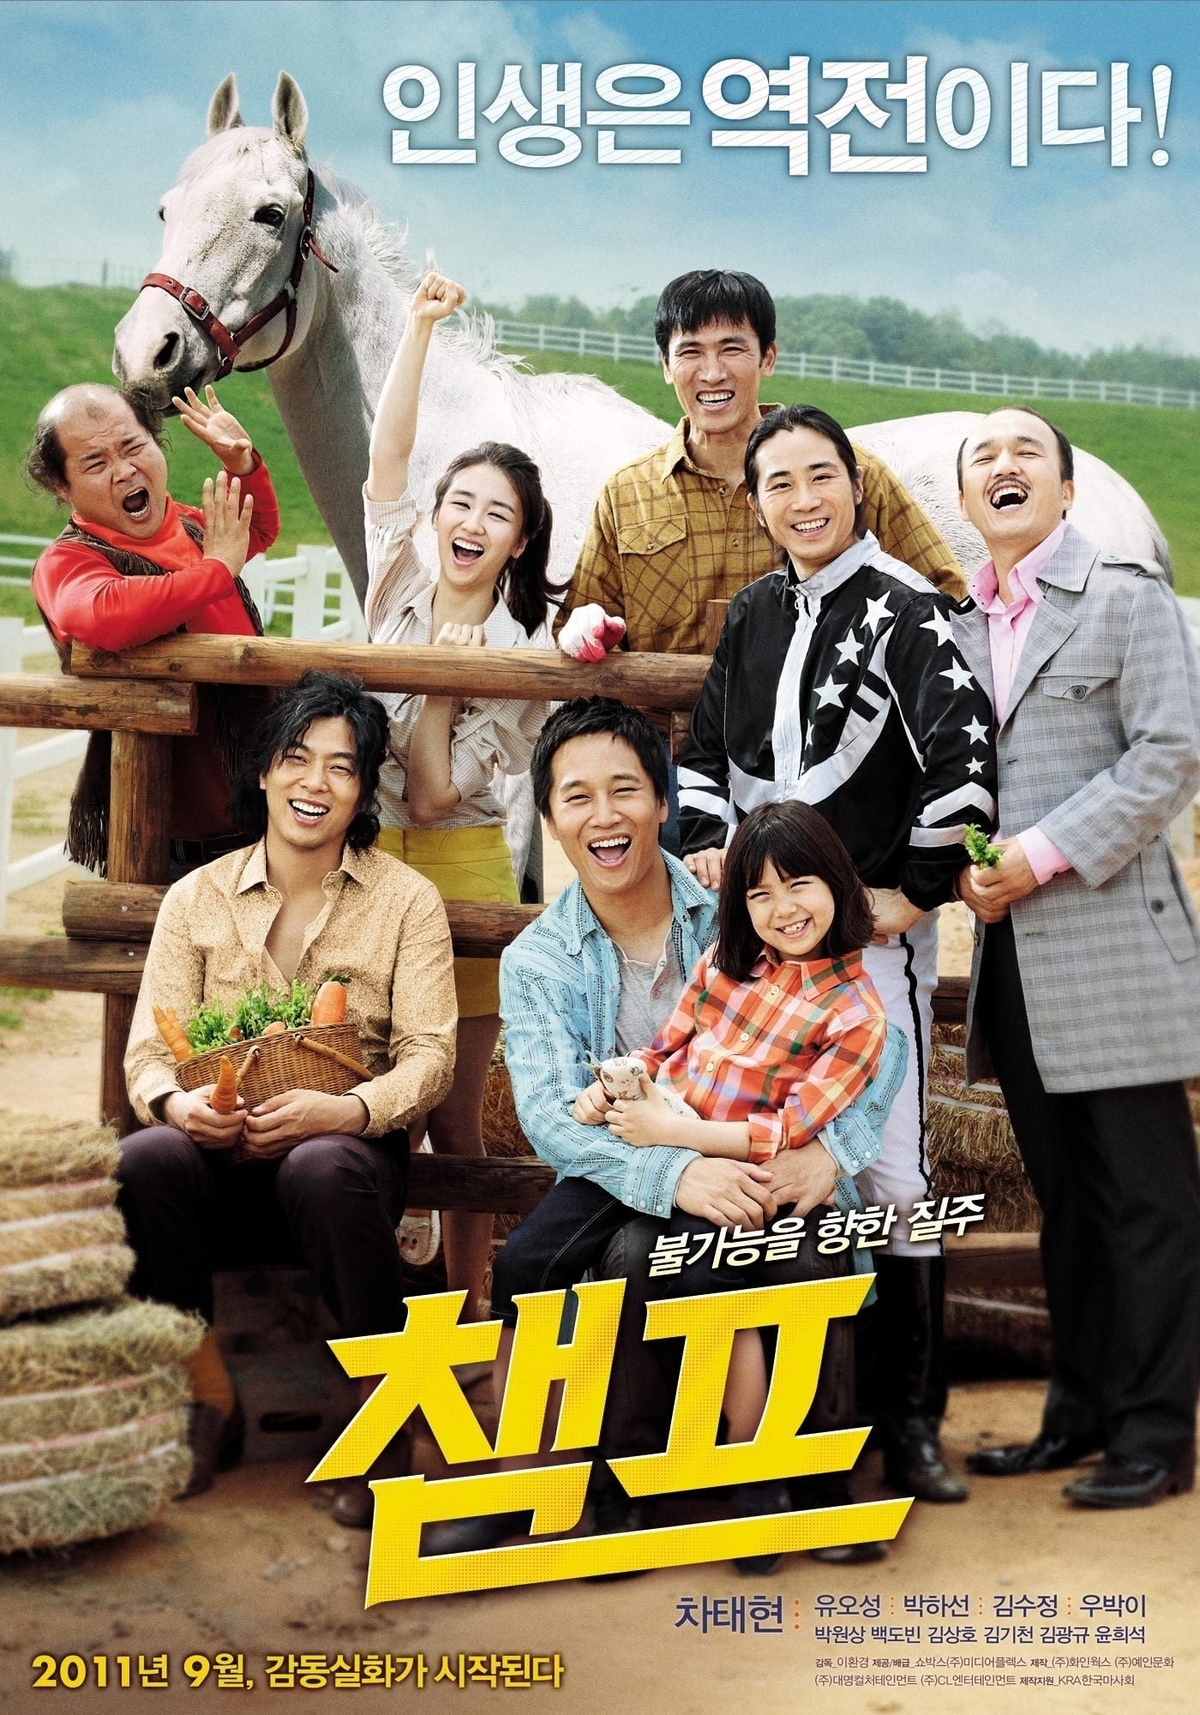 <p class="Normal"> Phim Nhà vô địch - Champ<span> dài 133 phút, do Lee Hwan Kyung làm đạo diễn. Nhà vô địch được sản xuất năm 2011 với sự tham gia những diễn viên sáng giá của điện ảnh Hàn như Cha Tae Hyun, Kim Soo Jung, Yu Oh Seong…</span></p> <p class="Normal"> Trong phim, tài tử Cha Tae Hyun vào vai tay đua ngựa cự phách - Seung Ho. Anh từng có sự nghiệp vẻ vang và gia đình hạnh phúc, được nhiều người ngường mộ. Sau tai nạn thảm khốc, Seung Ho không chỉ mất vợ, mà còn bị di chứng về mắt, ngày càng mờ đi, không thấy rõ mọi vật xung quanh.</p> <p class="Normal"> Cuộc đời Seung Ho "xuống dốc không phanh" khi không thể thi đấu, anh đau lòng hơn khi nhìn cô con gái nhỏ thiếu bàn tay chăm sóc của mẹ. Tồi tệ hơn, toàn bộ số tiền anh dành dụm được bị mất trắng trong một vụ dàn xếp bán độ. Vì thế, Seung Ho và con gái chạy trốn tới nơi hẻo lành trên đảo Jeju.</p> <p class="Normal"> Cuộc đời Seung Ho tưởng đã chấm hết thì bất ngờ được cứu rỗi nhờ sự xuất hiện của chú ngựa bất trị bị tật ở chân. Bộ phim nhấn mạnh thông điệp "khi một cánh cửa đóng lại, cánh cửa khác sẽ mở ra, tất nhiên chỉ khi bạn biết cố gắng". Một nhà vô địch hết thời với đôi mắt mờ dần và chú ngựa không lành lặn sẽ làm được gì trên trường đua? </p>